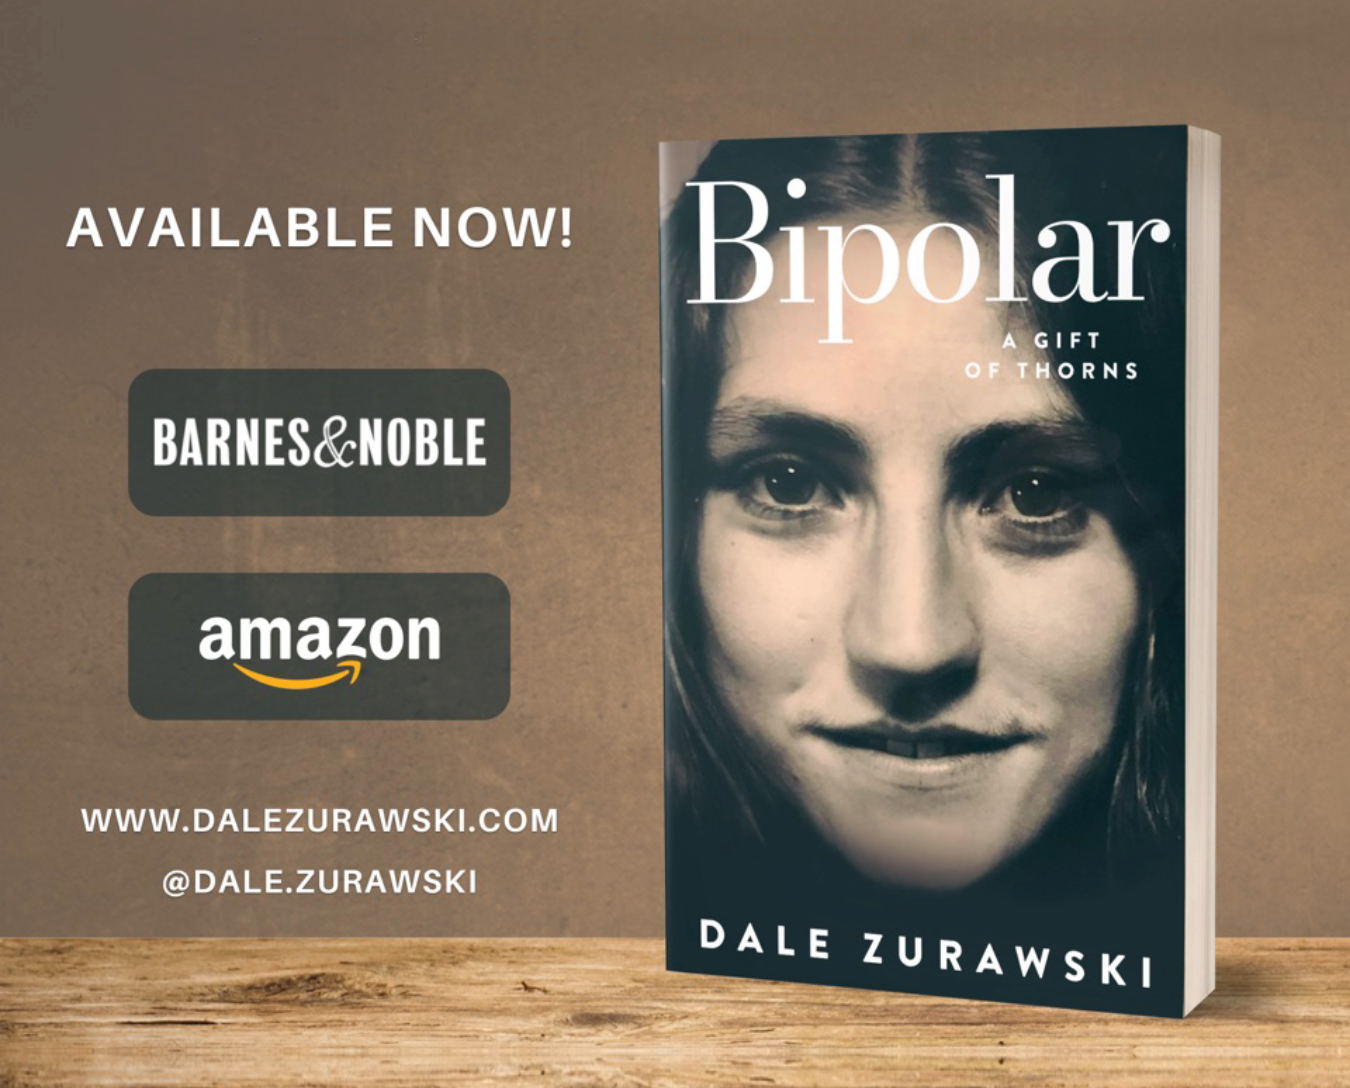 Bipolar—A Gift of Thorns by Dale Zurawski